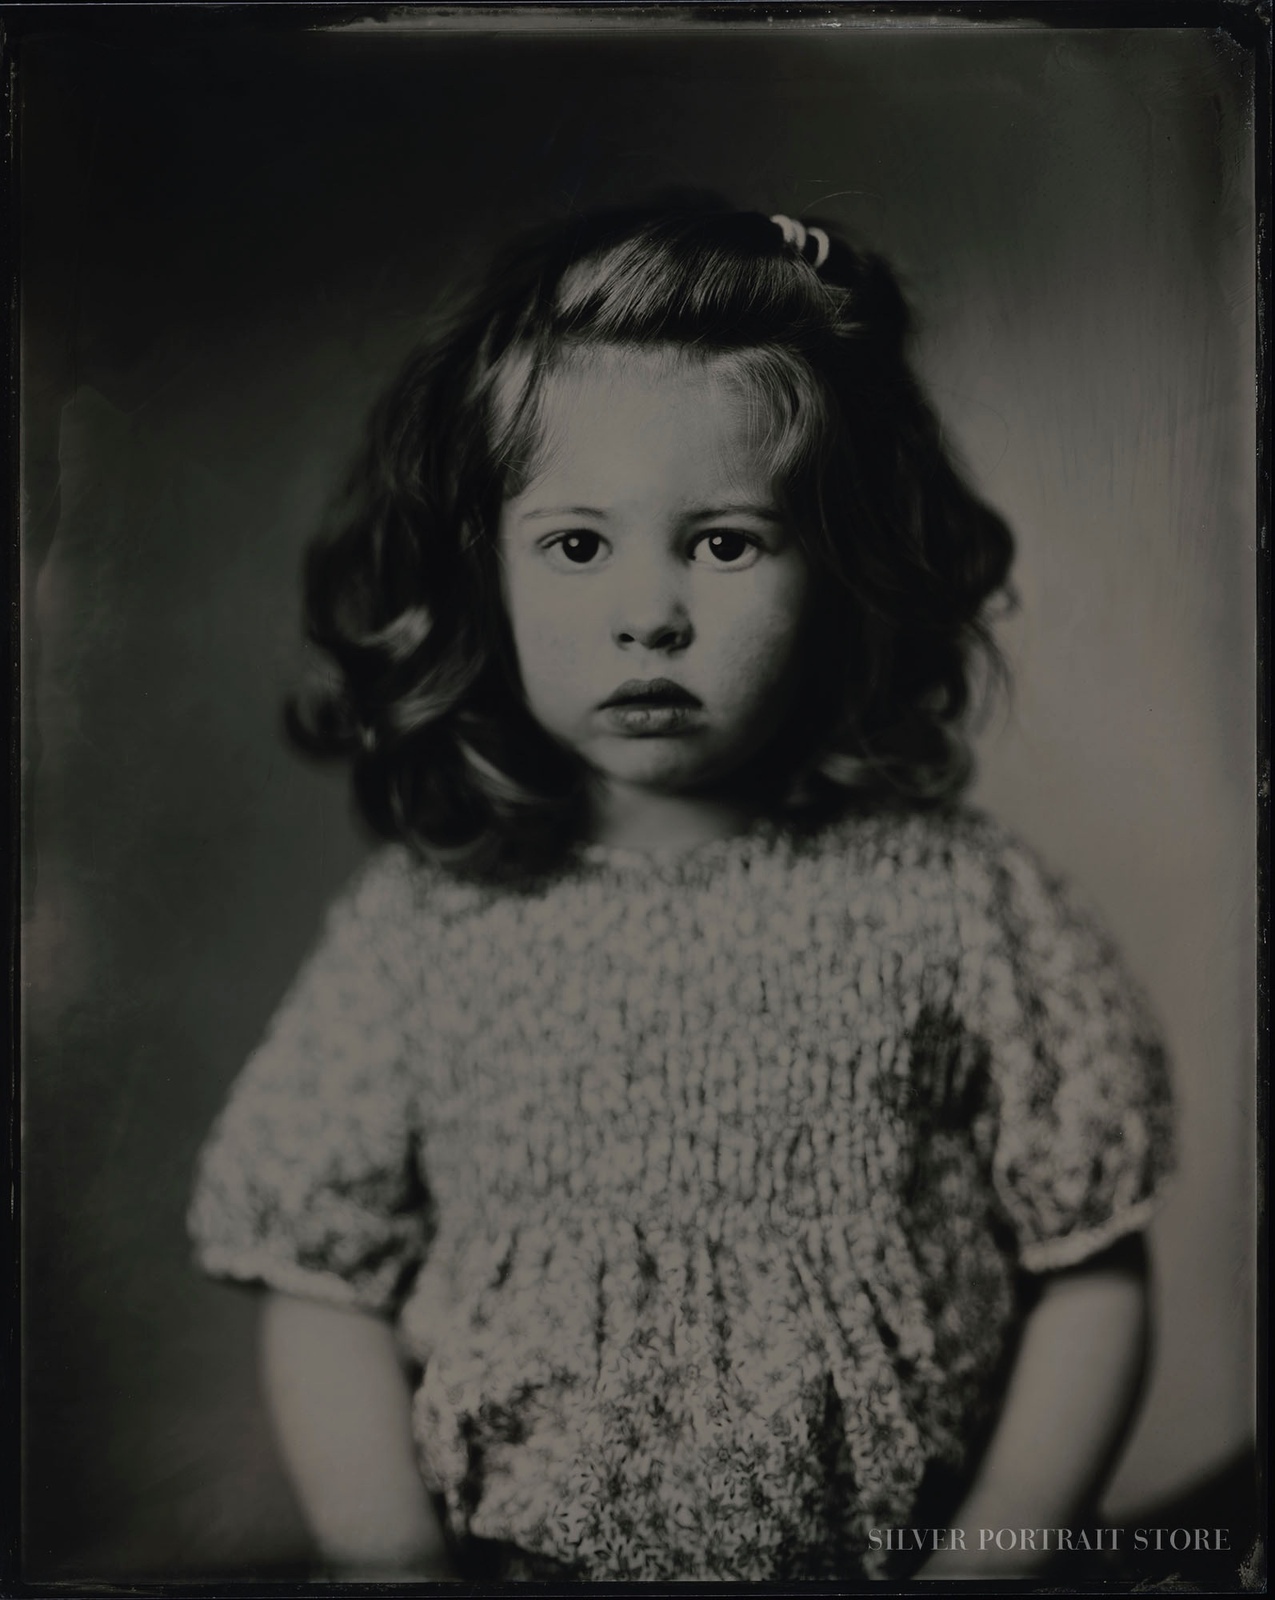 Minou-Silver Portrait Store-Wet plate collodion-Tintype 20 x 25 cm.